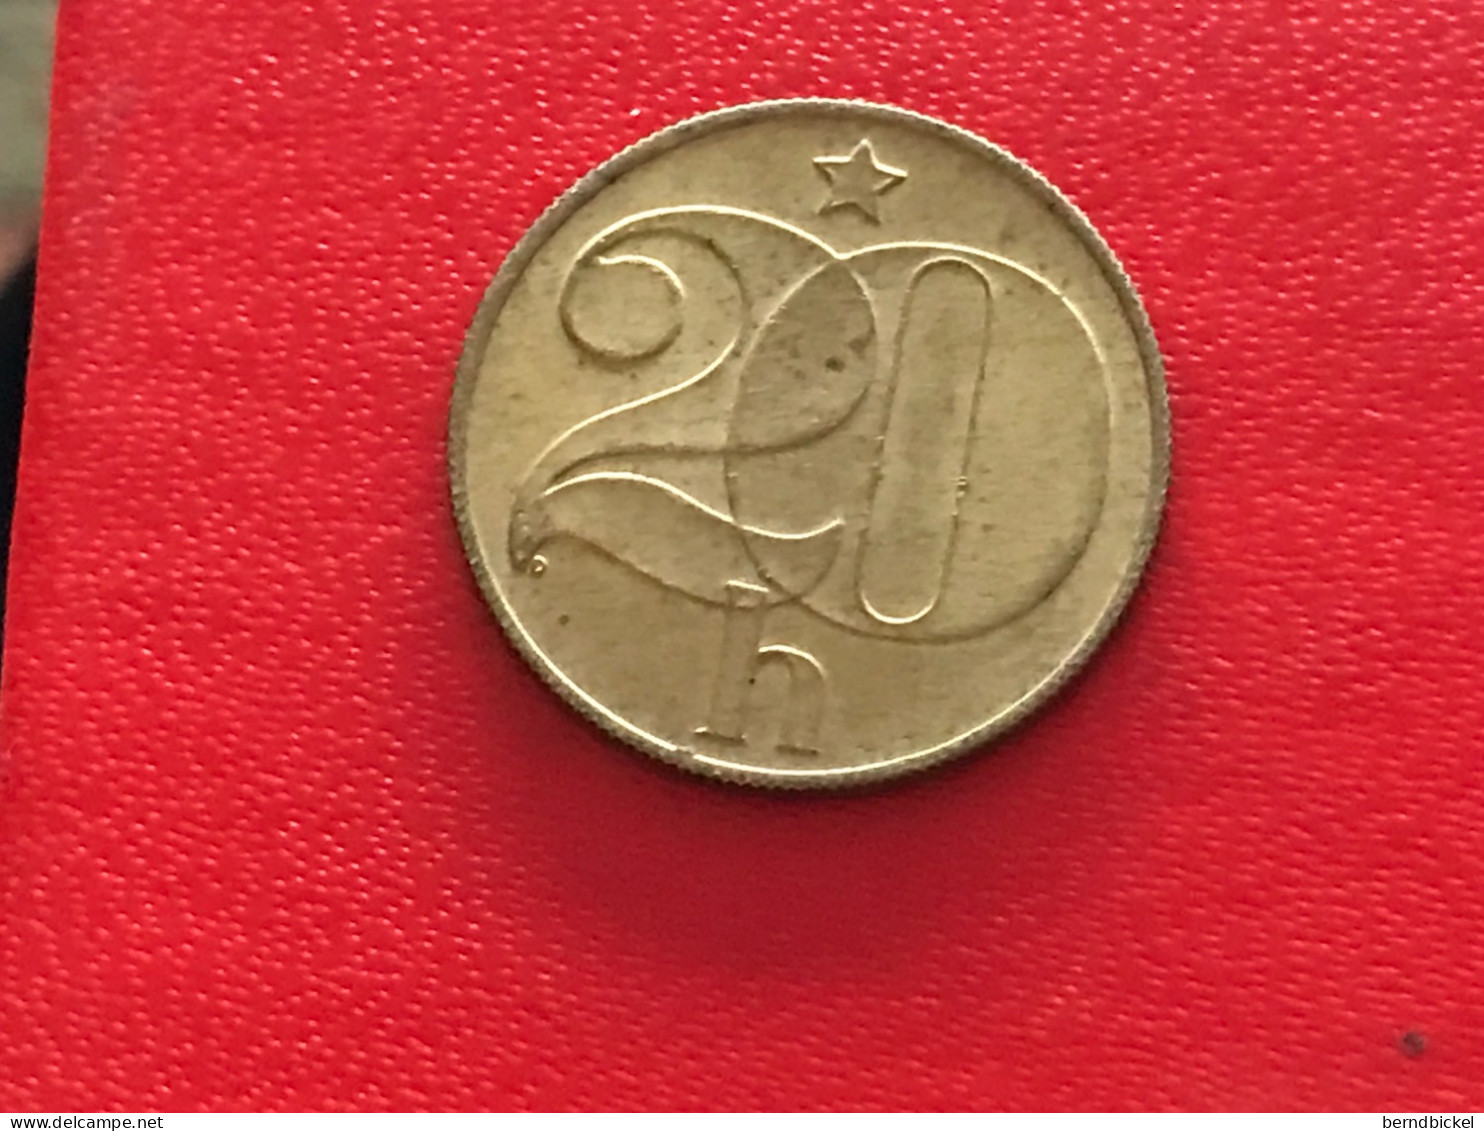 Münze Münzen Umlaufmünze Tschechoslowakei 20 Heller 1985 - Checoslovaquia